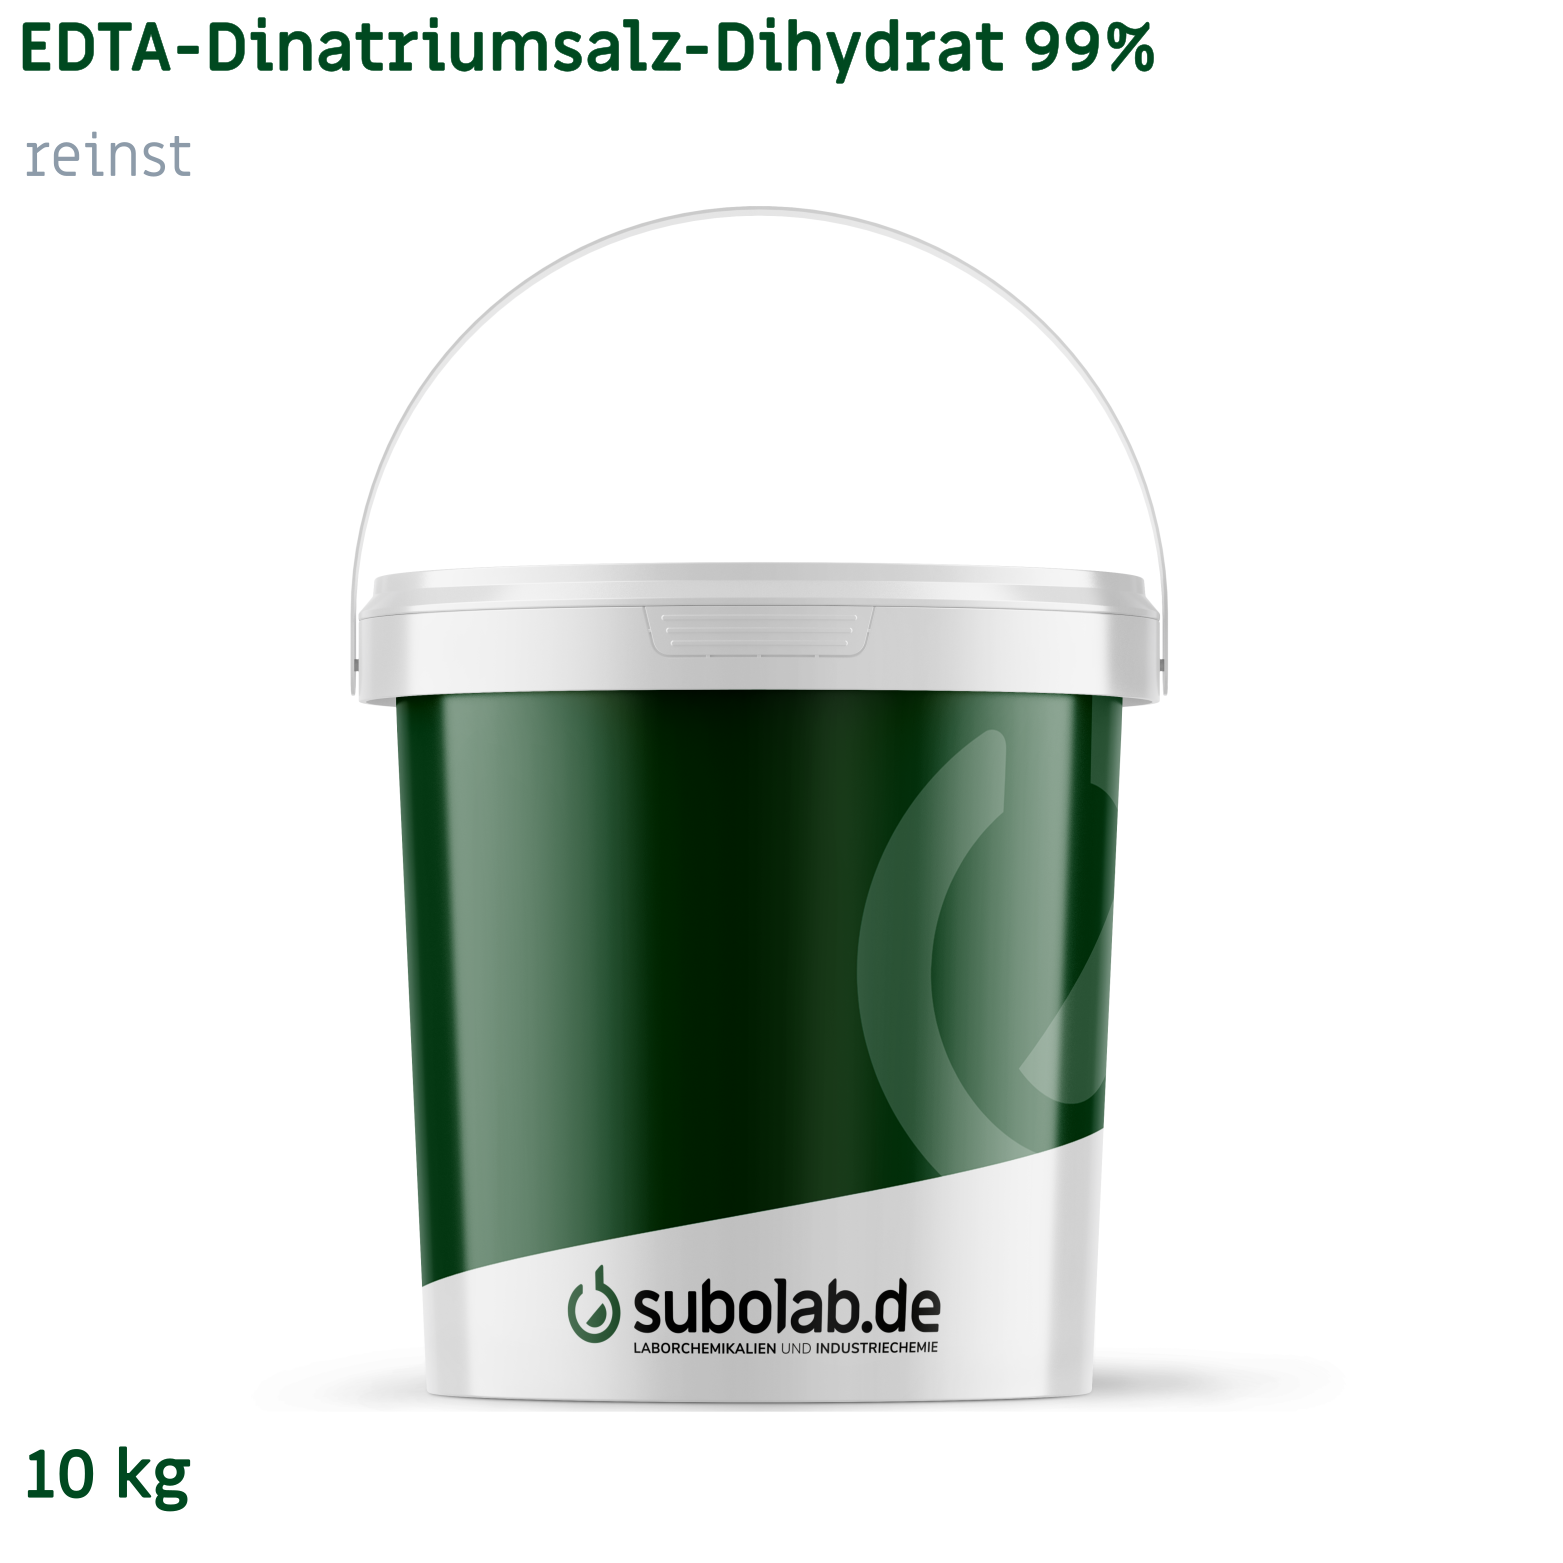 Bild von EDTA - Dinatriumsalz - Dihydrat 99% reinst (10 kg)